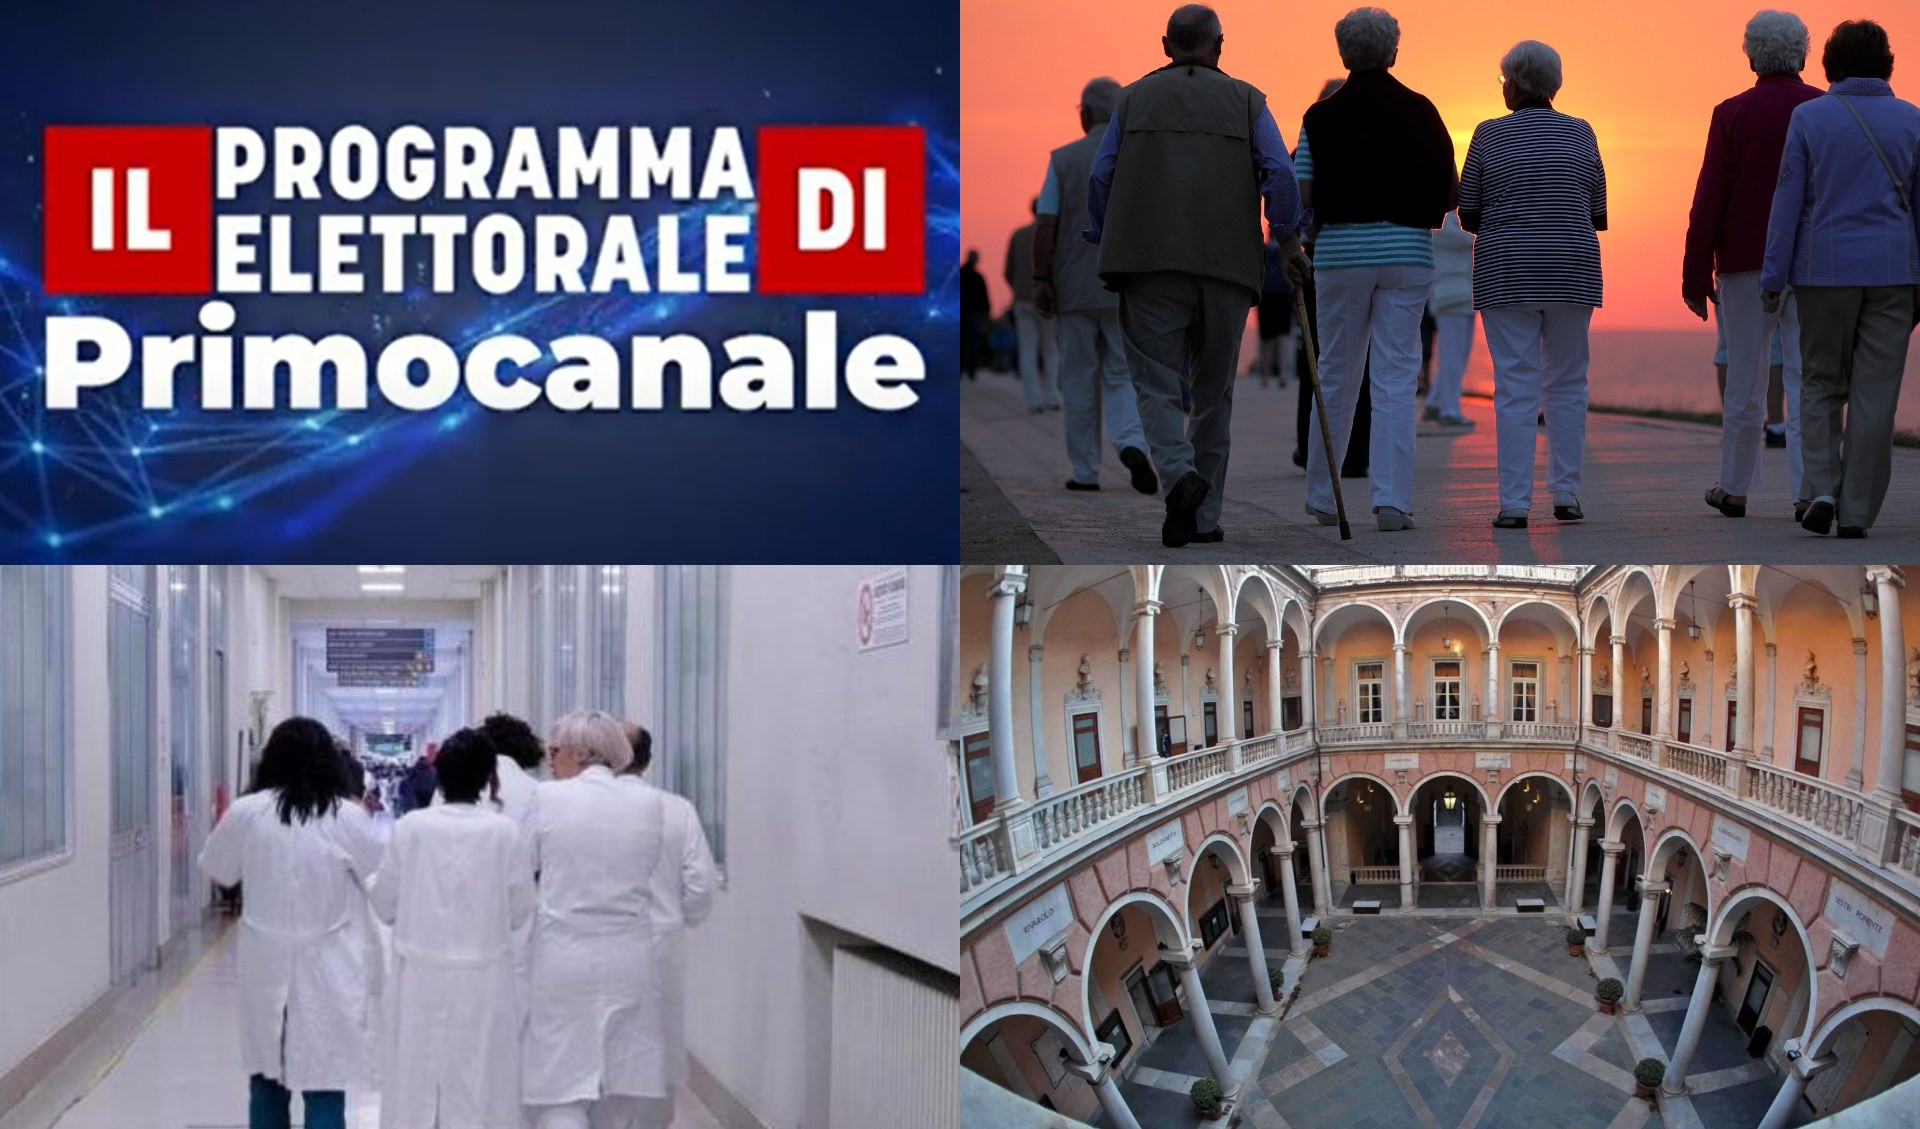 Il Programma elettorale di Primocanale - Anziani e società, il modello Liguria (puntata 13)